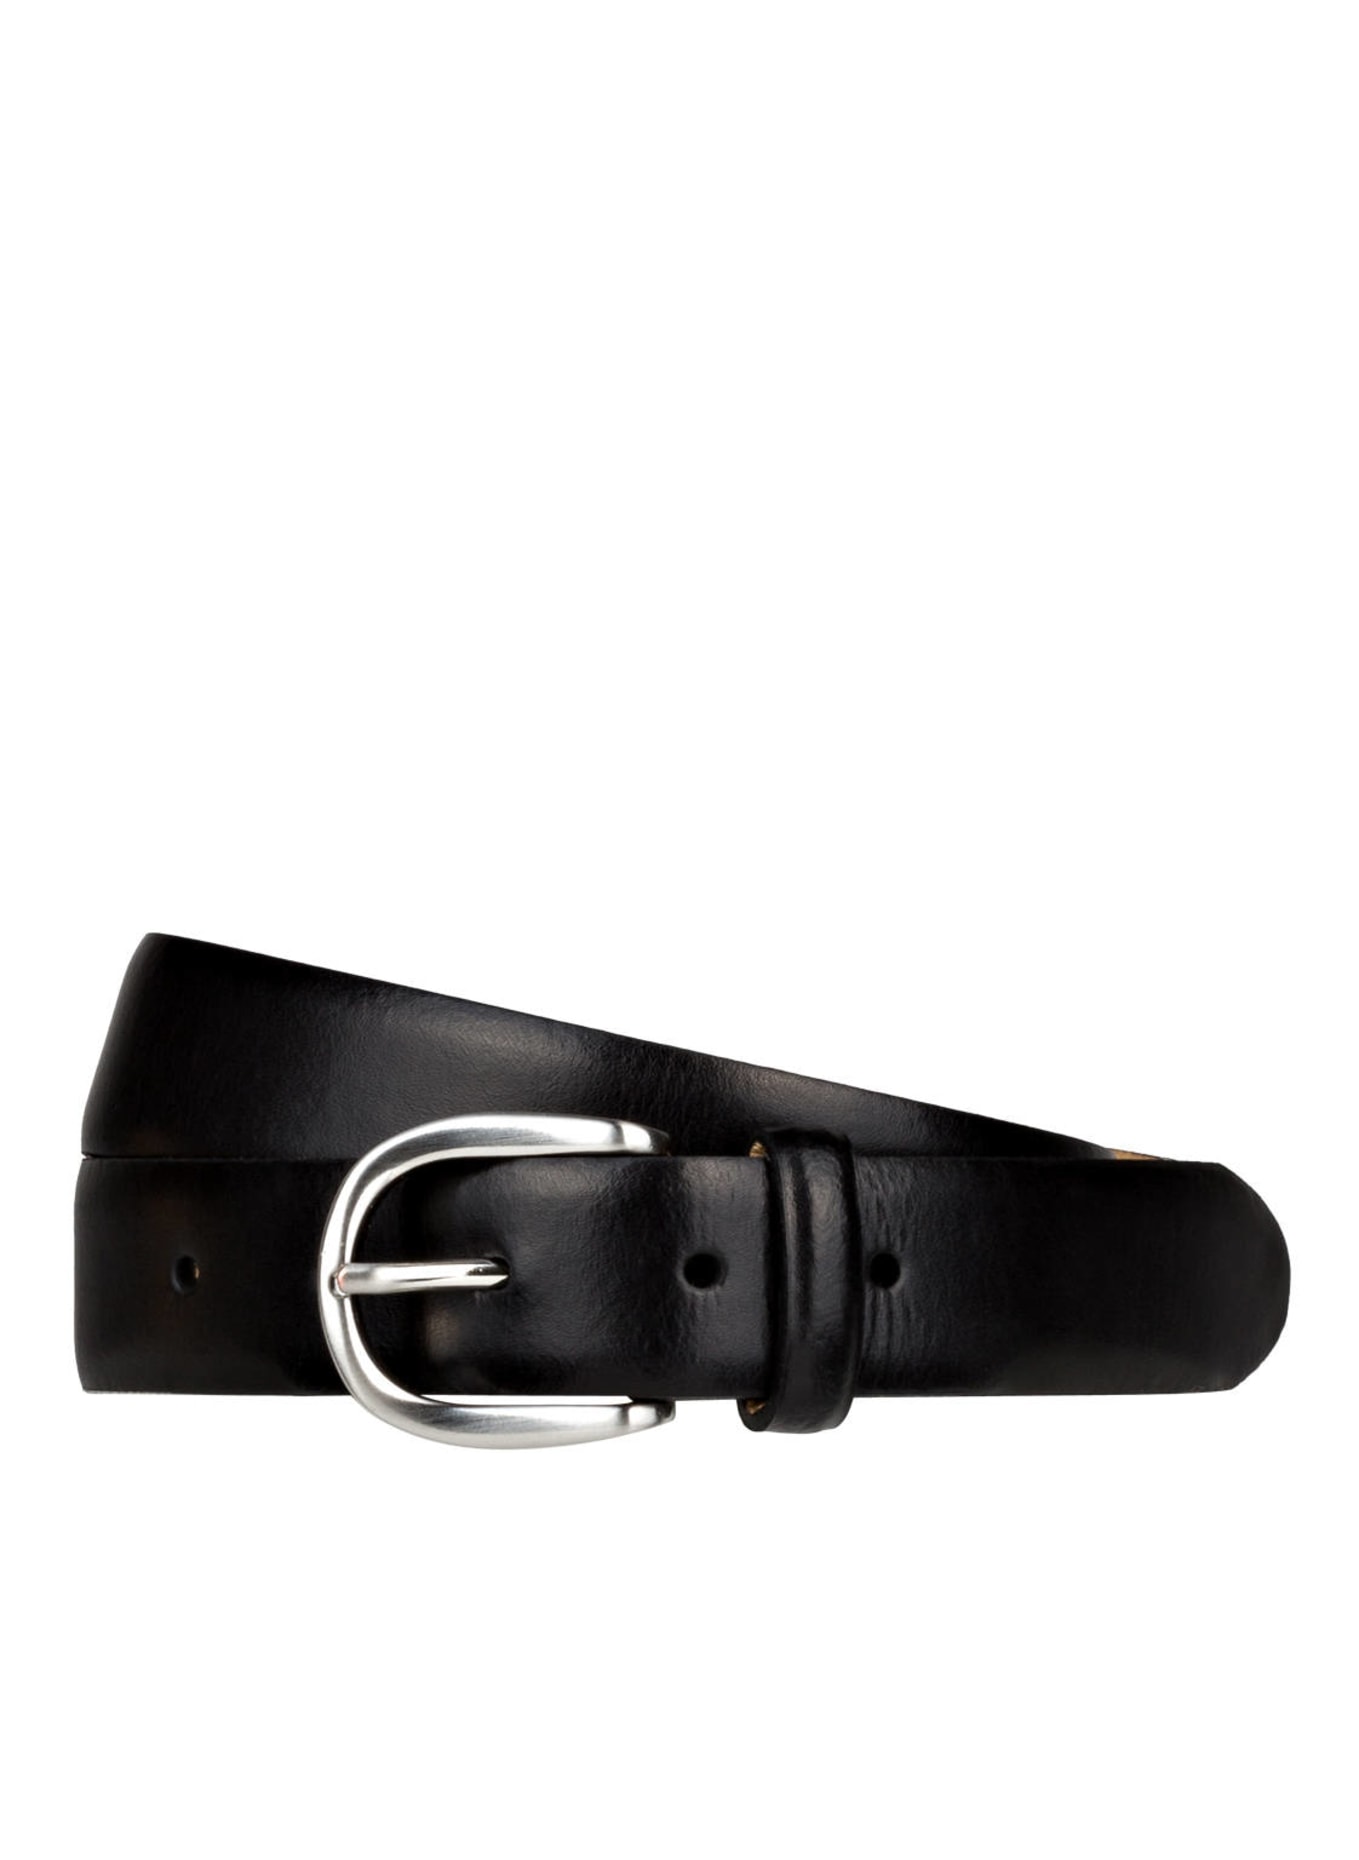 SCHUCHARD & FRIESE Leather belt, Color: BLACK (Image 1)